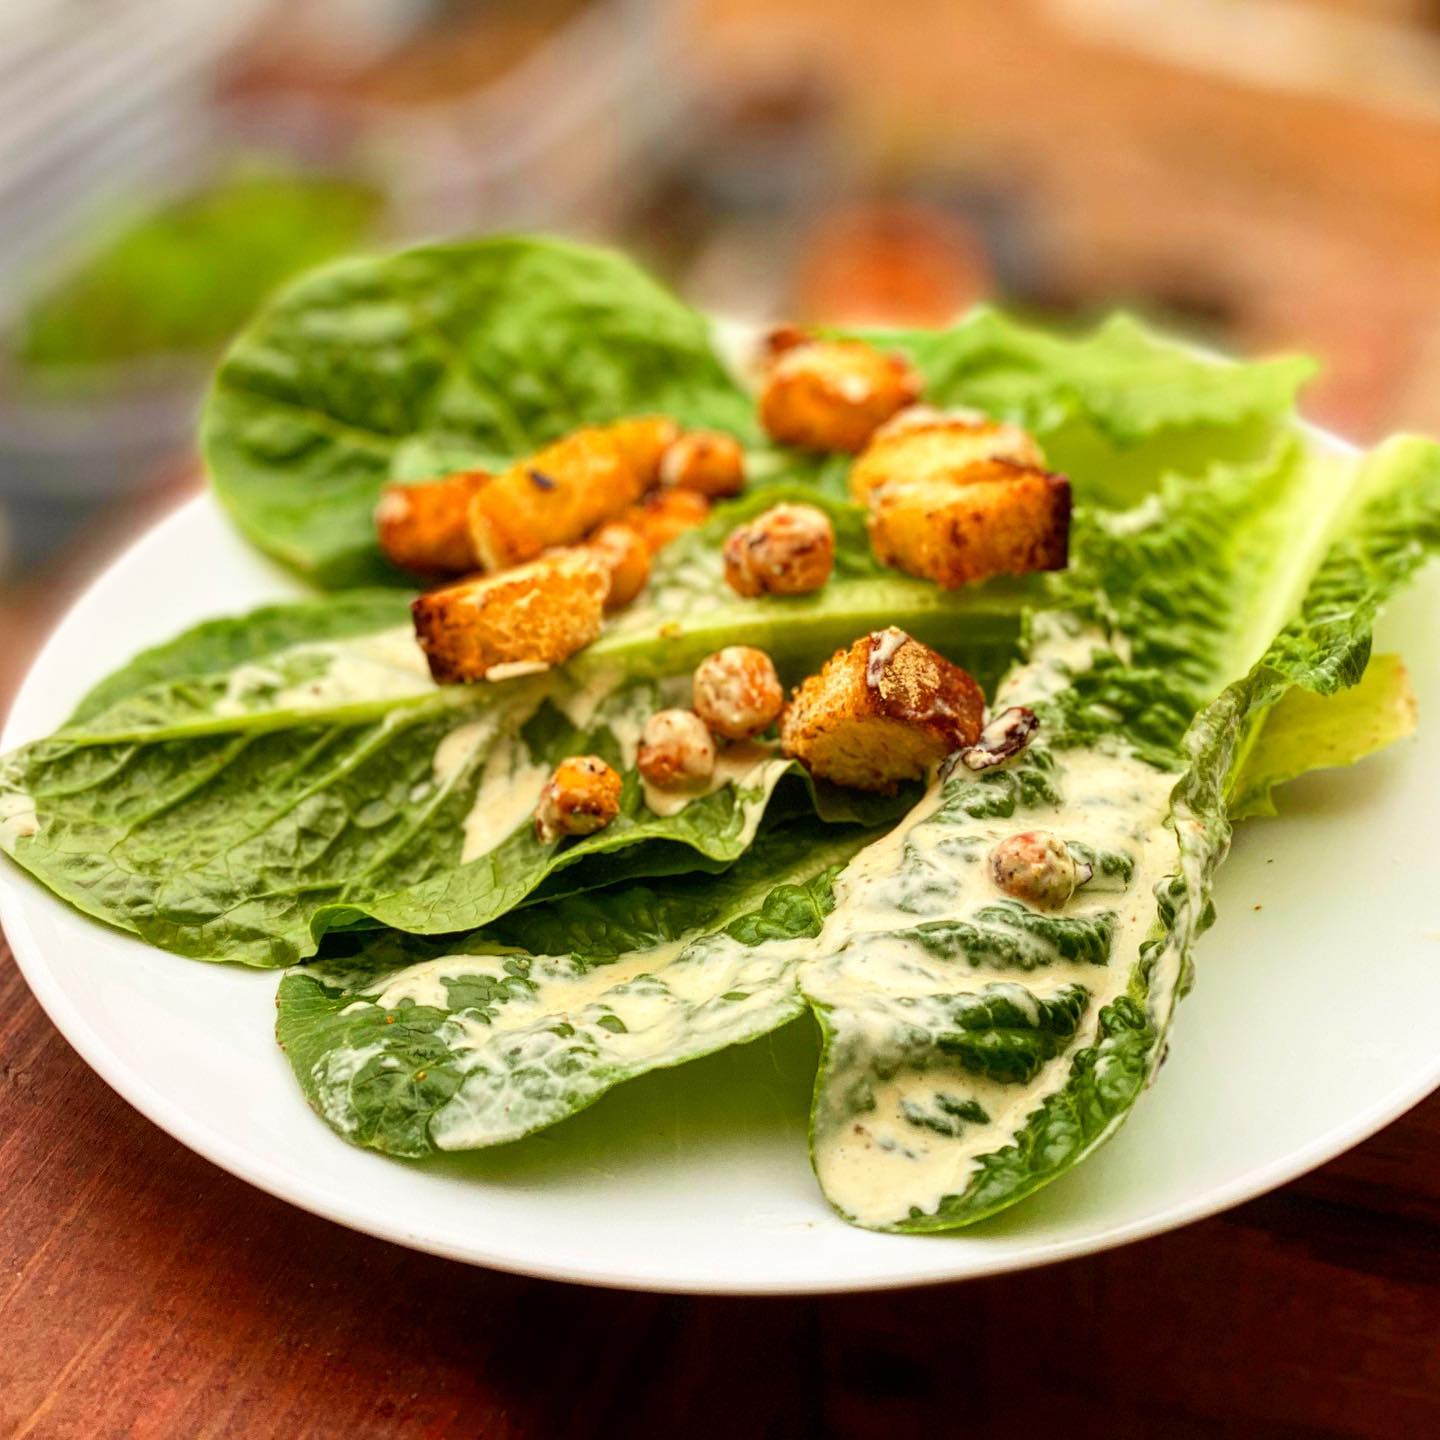 Photograph of a Caesar Salad